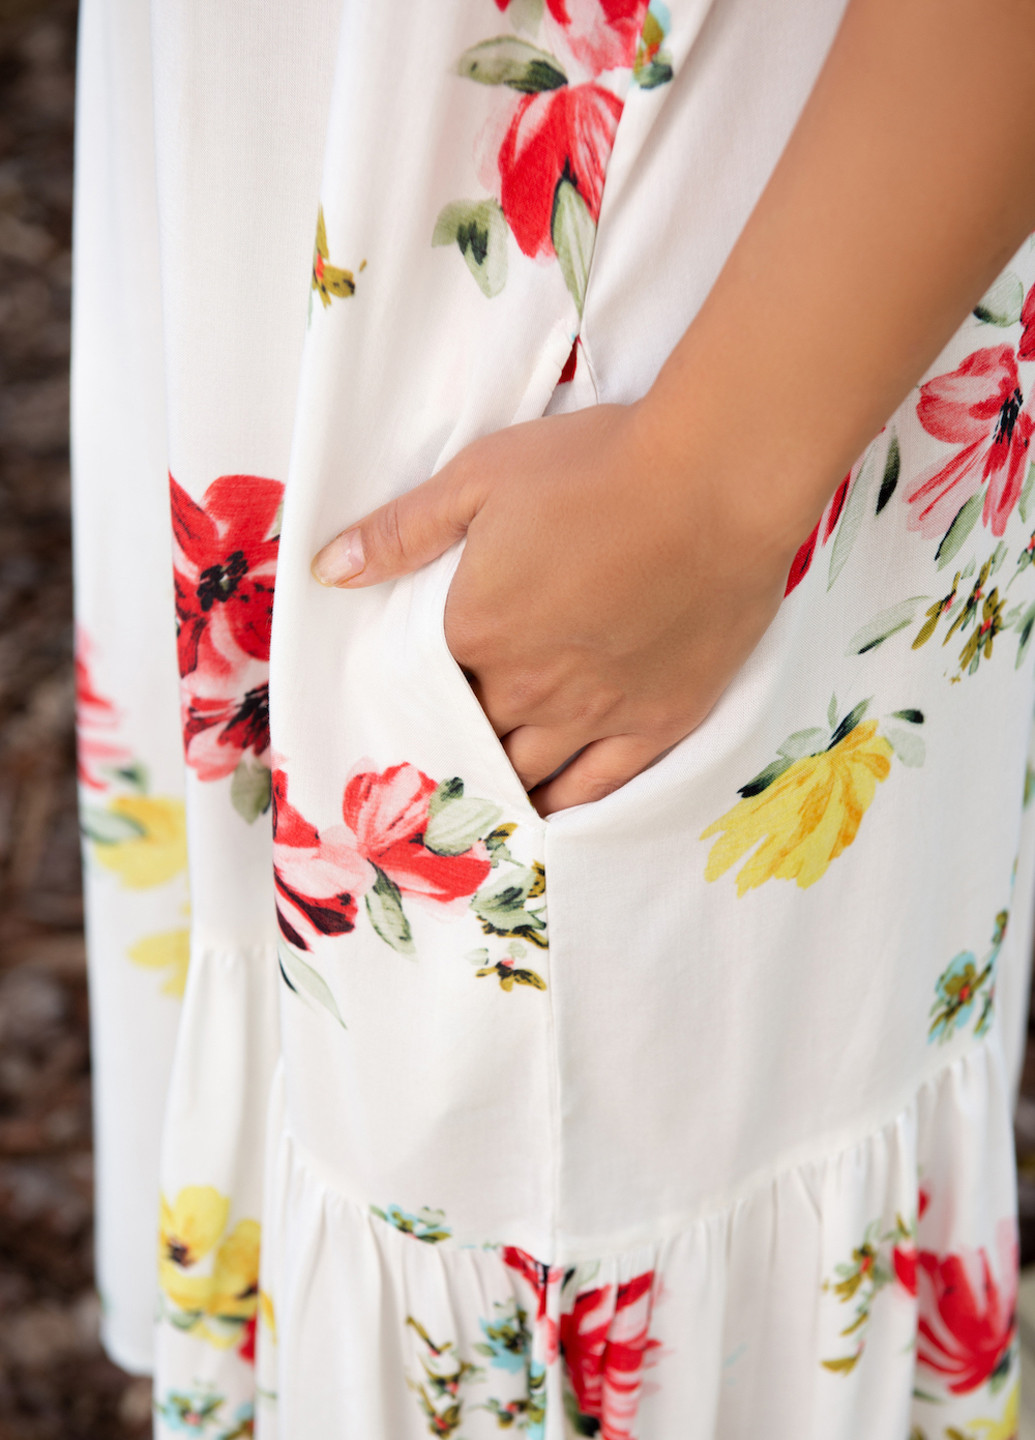 Белое пляжное платье а-силуэт Indiano с цветочным принтом